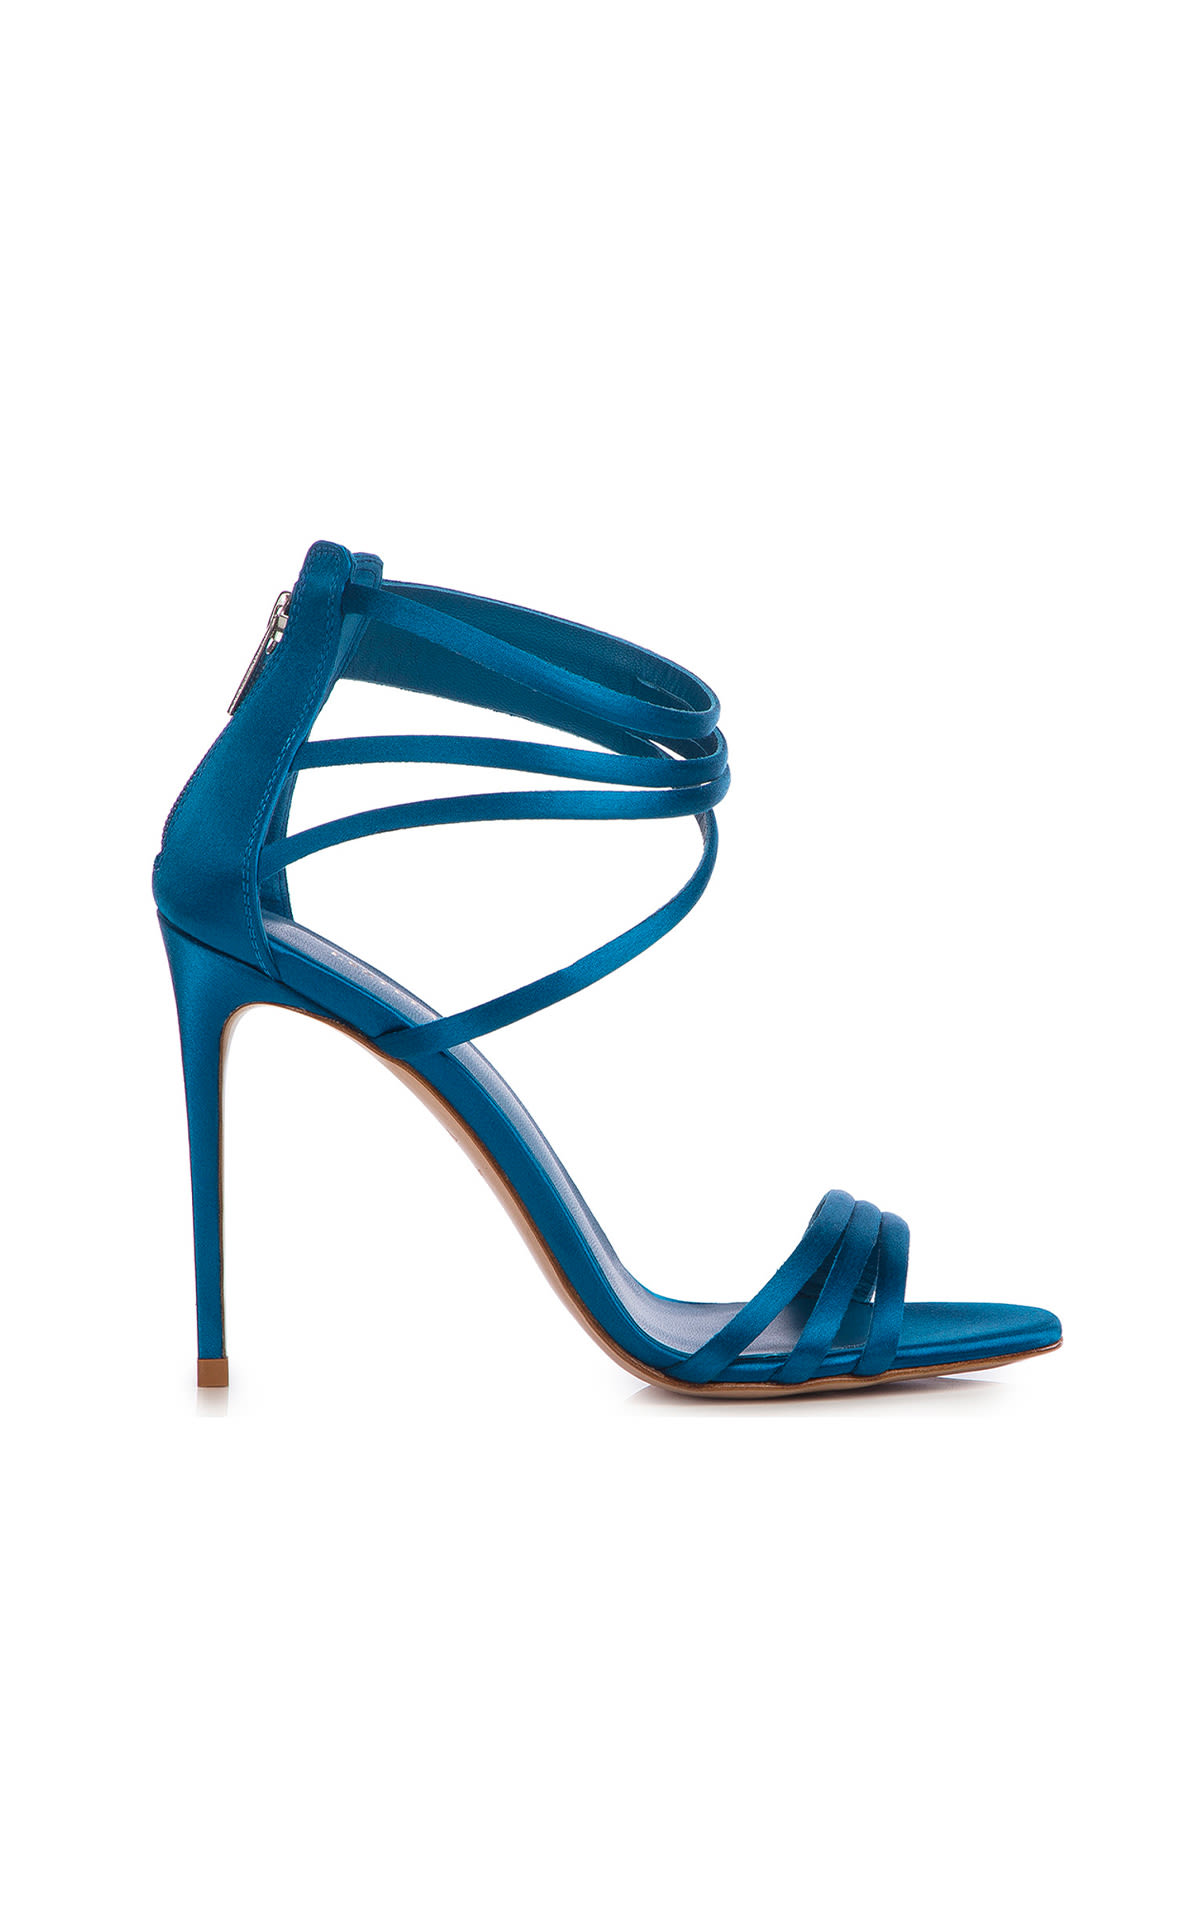 Le Silla light blue Denise sandals